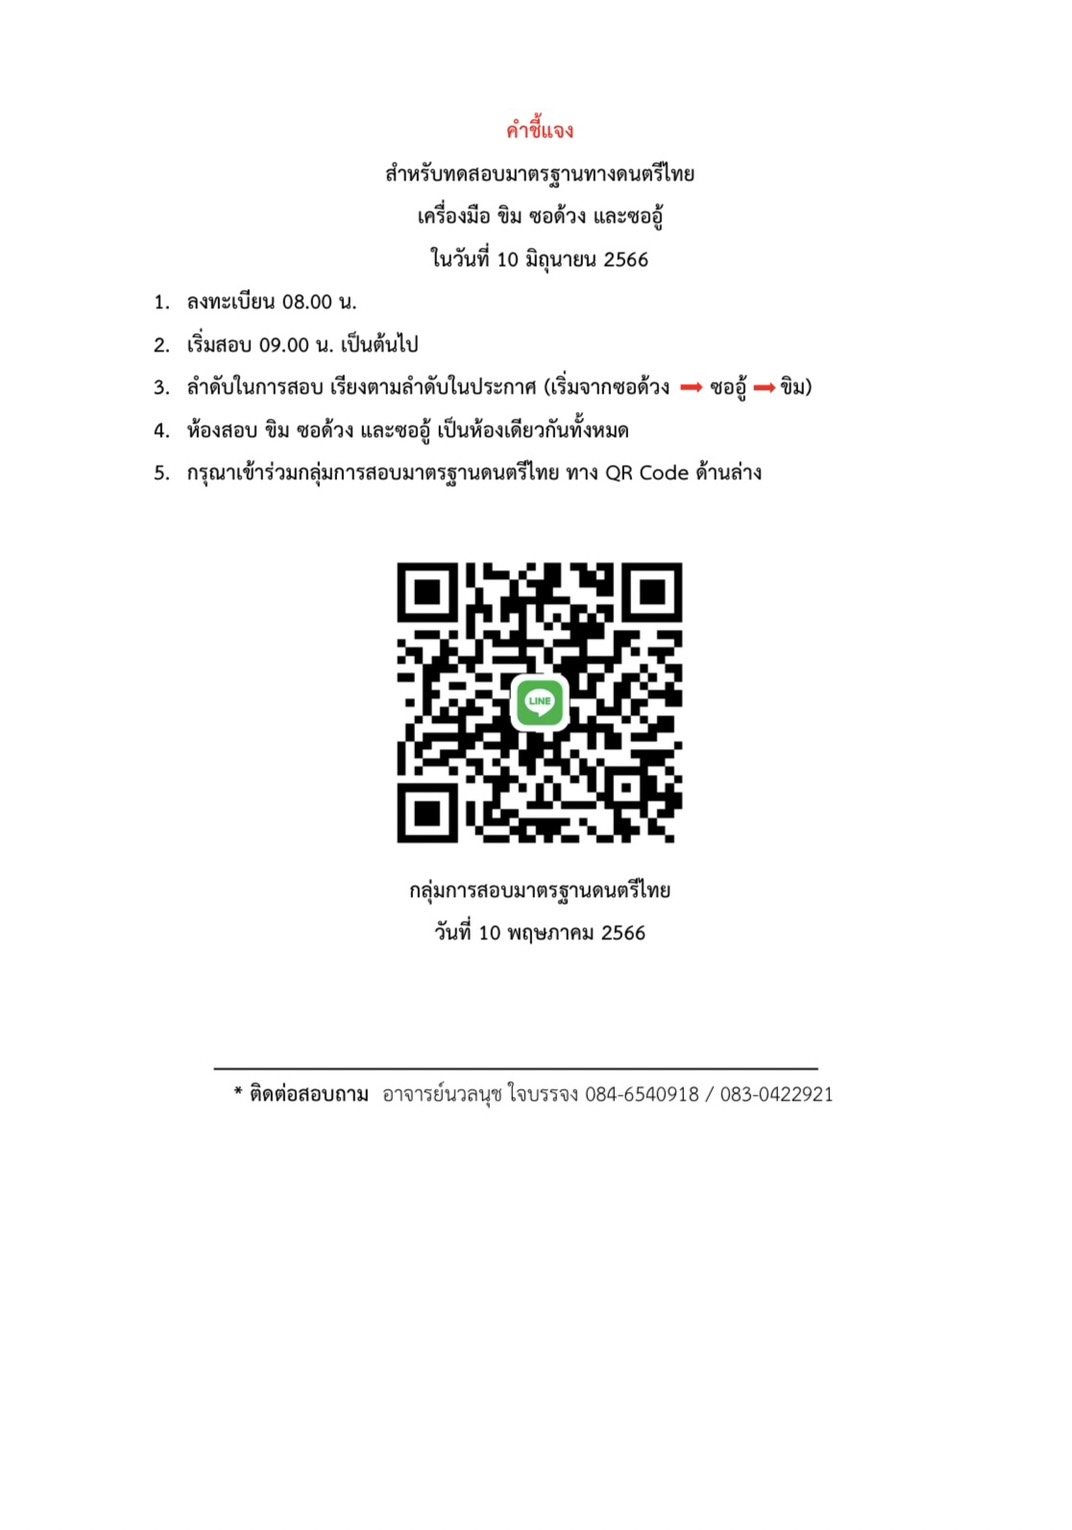 ประกาศลำดับการทดสอบมาตรฐานการปฏิบัติดนตรีไทย วันเสาร์ที่ 10 มิถุนายน 2566